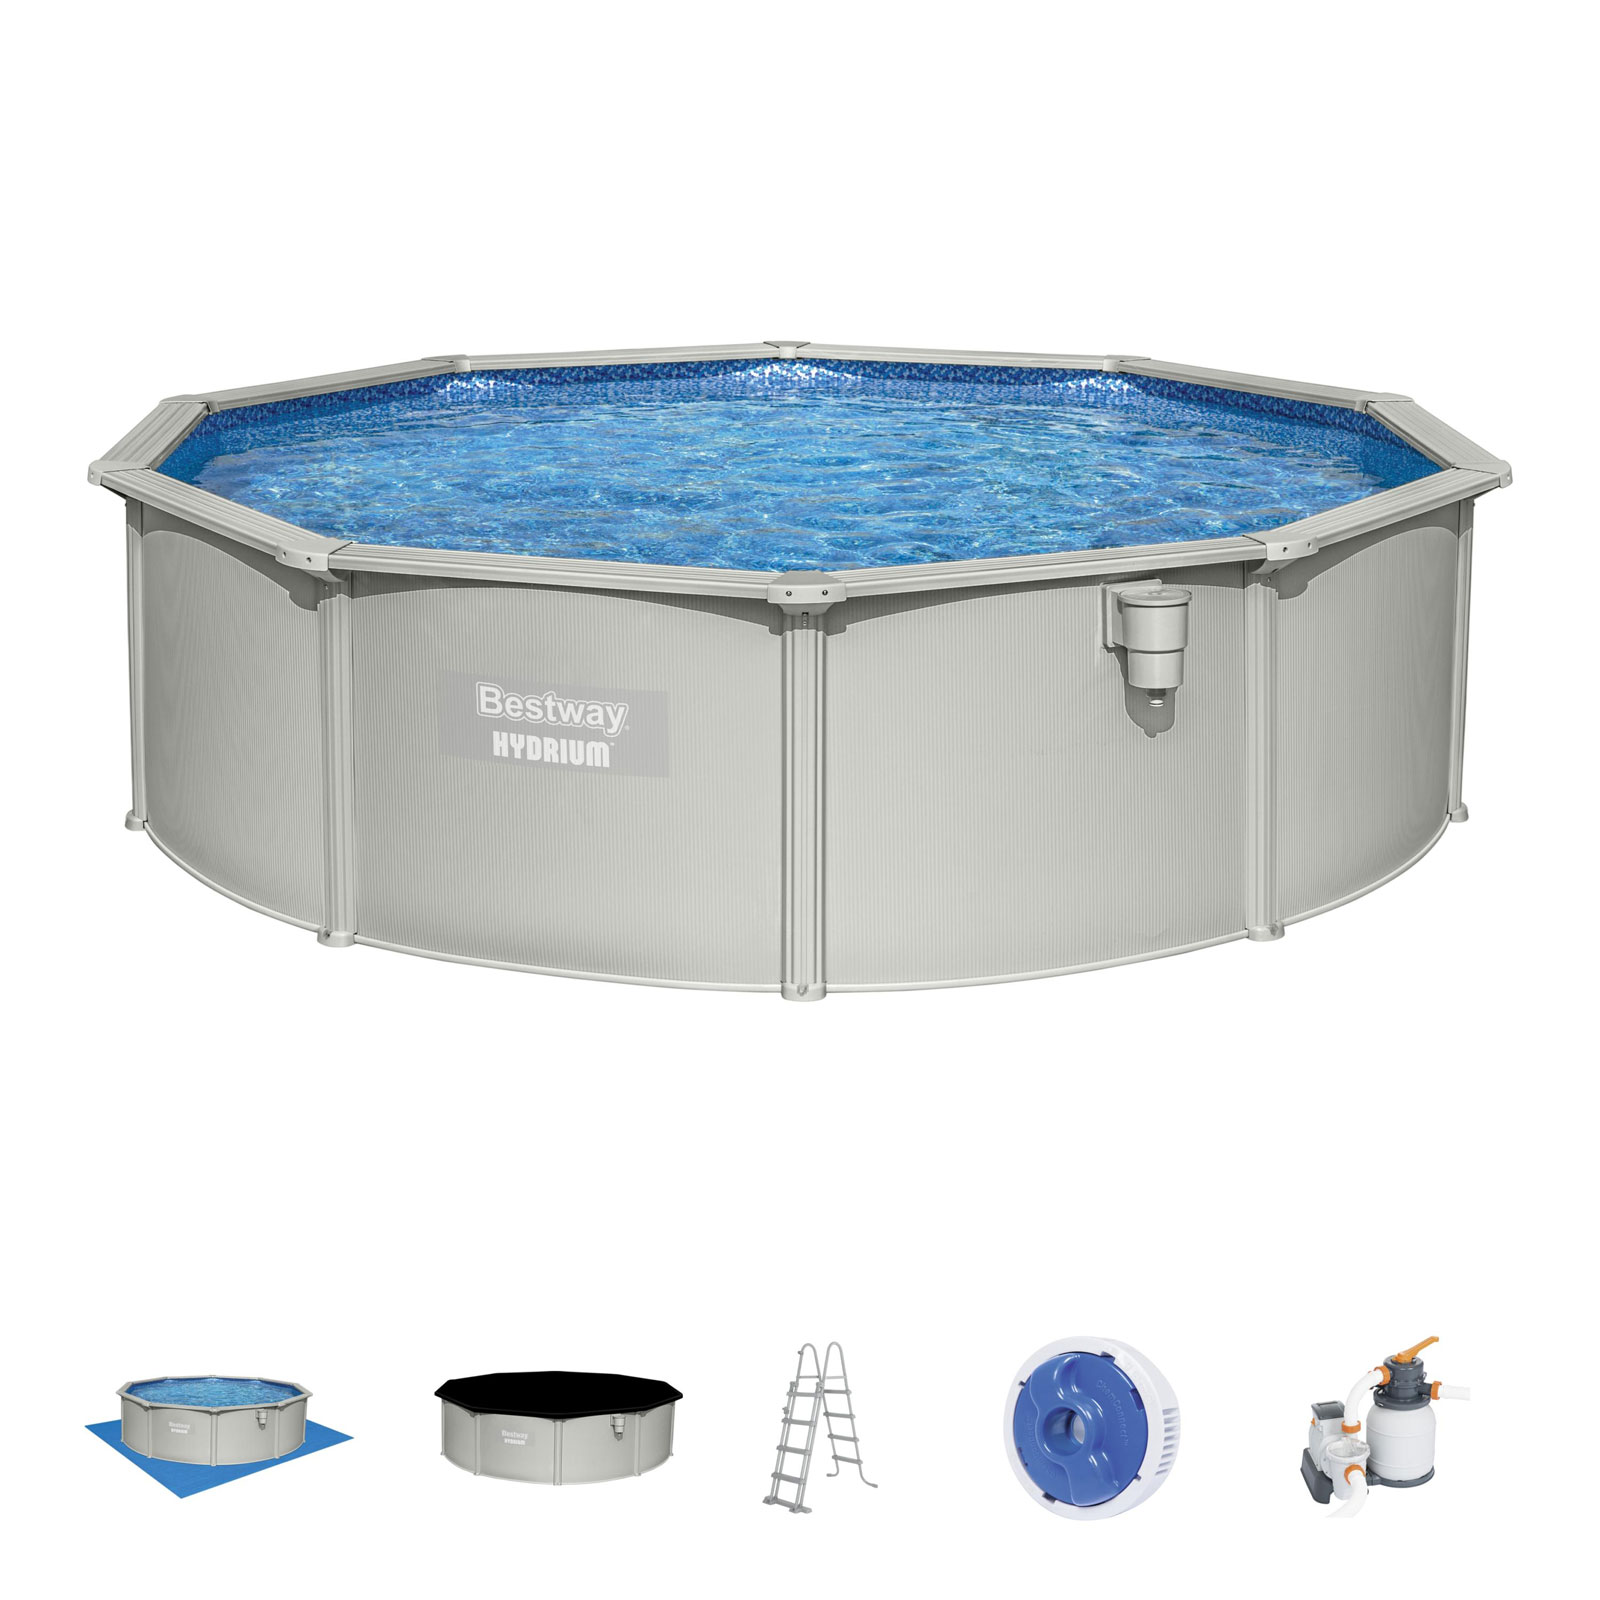 Piscina autoportante 460cm con depuradora – Tu piscina y jardín